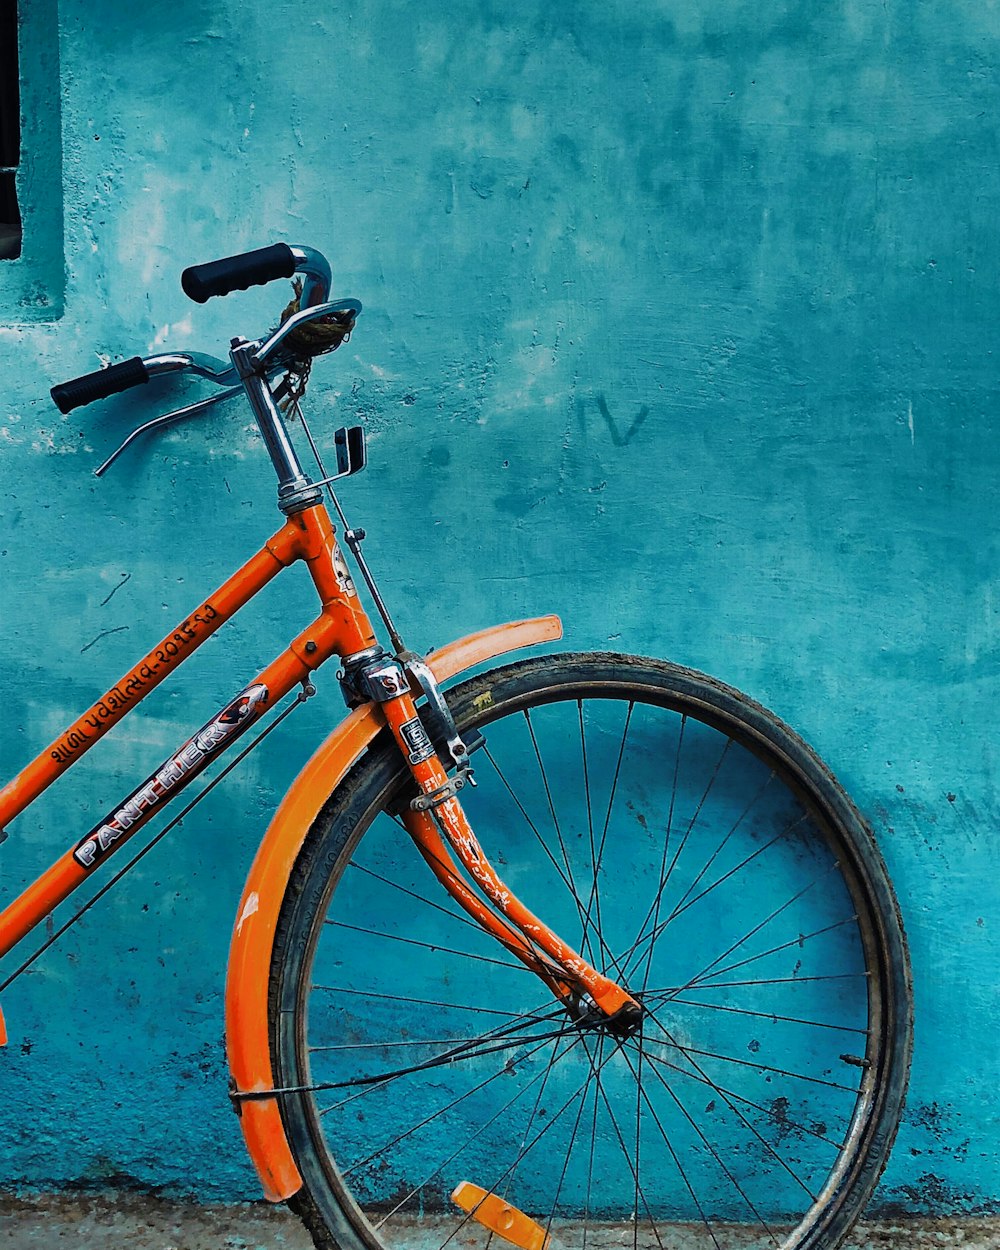 Nueva bicicleta de montaña con ruedas de 29 pulgadas y marco azul aislado  sobre fondo blanco.